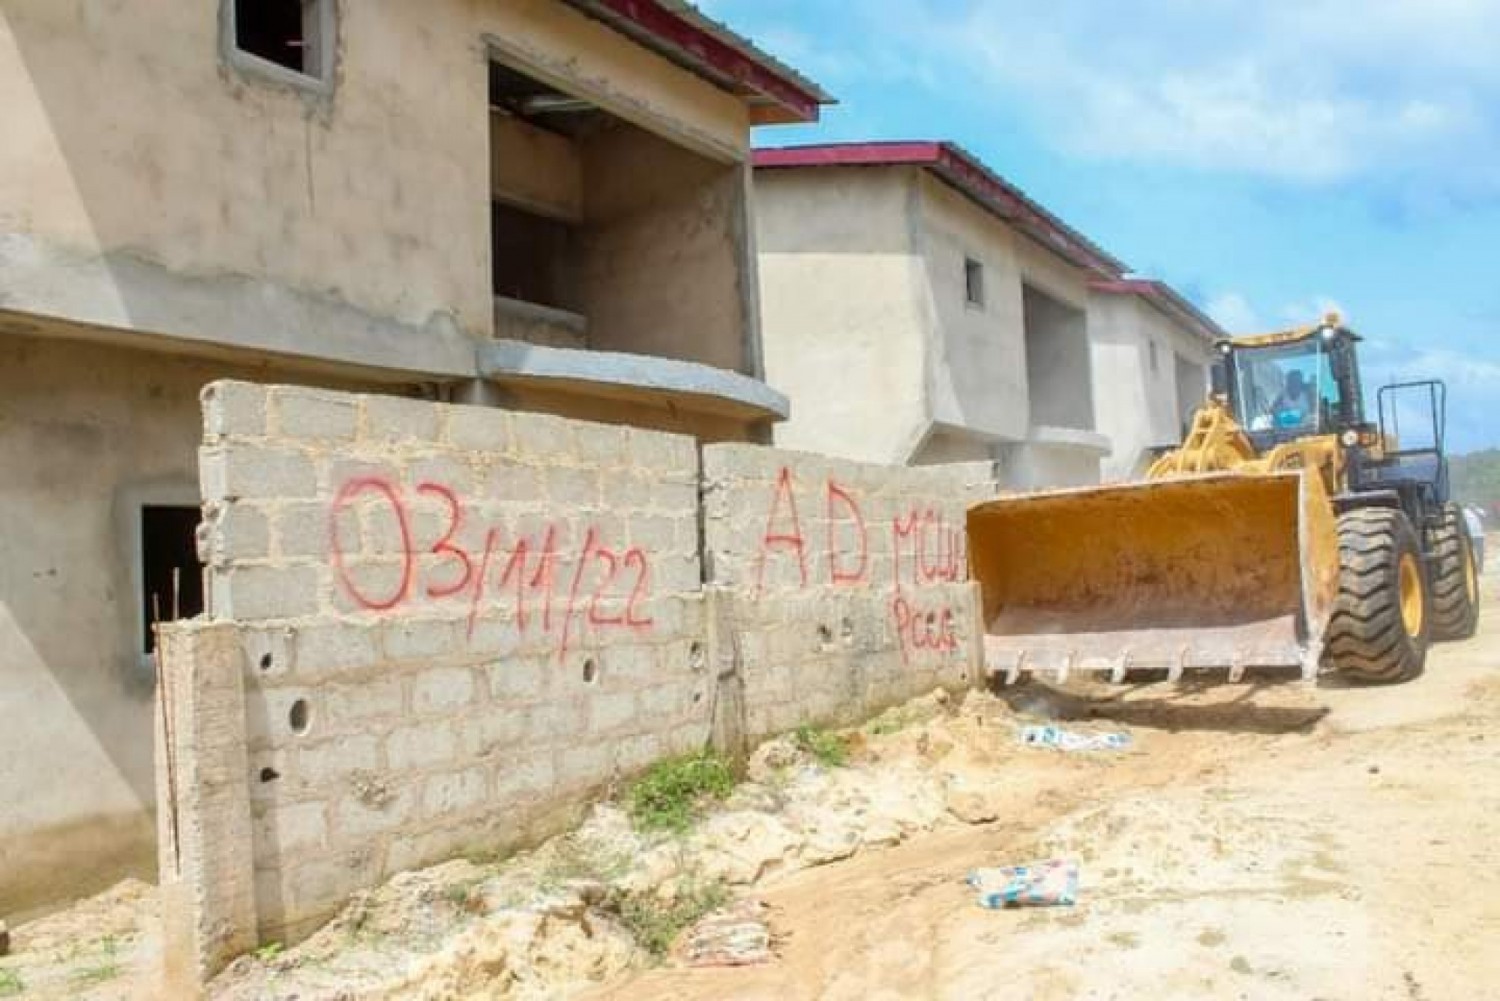 Côte d'Ivoire : Bingerville, plusieurs Villas de différentes promotions immobilières érigées sans agrément programme, démolies